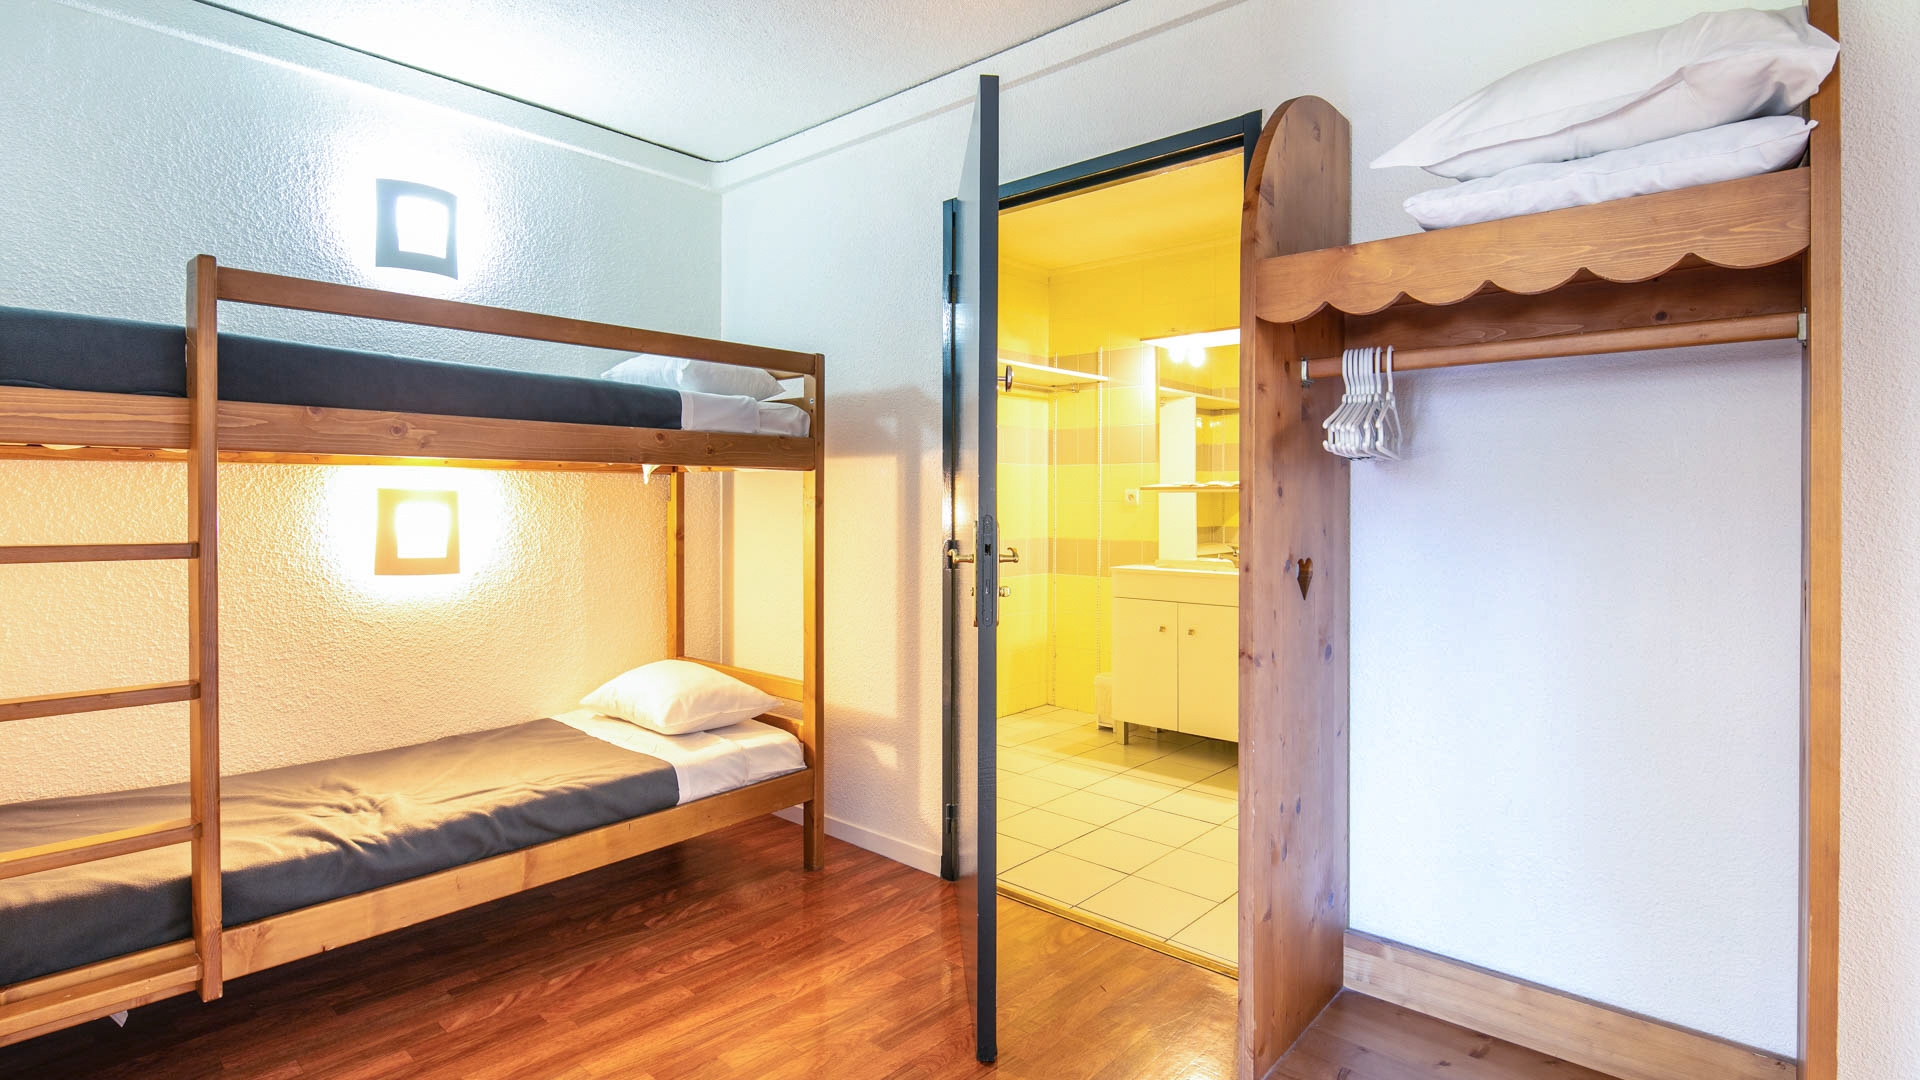 L'Edelweiss in Les 2 Alpes - Appartement für 8 Personen: Schlafbereich (Beispiel)